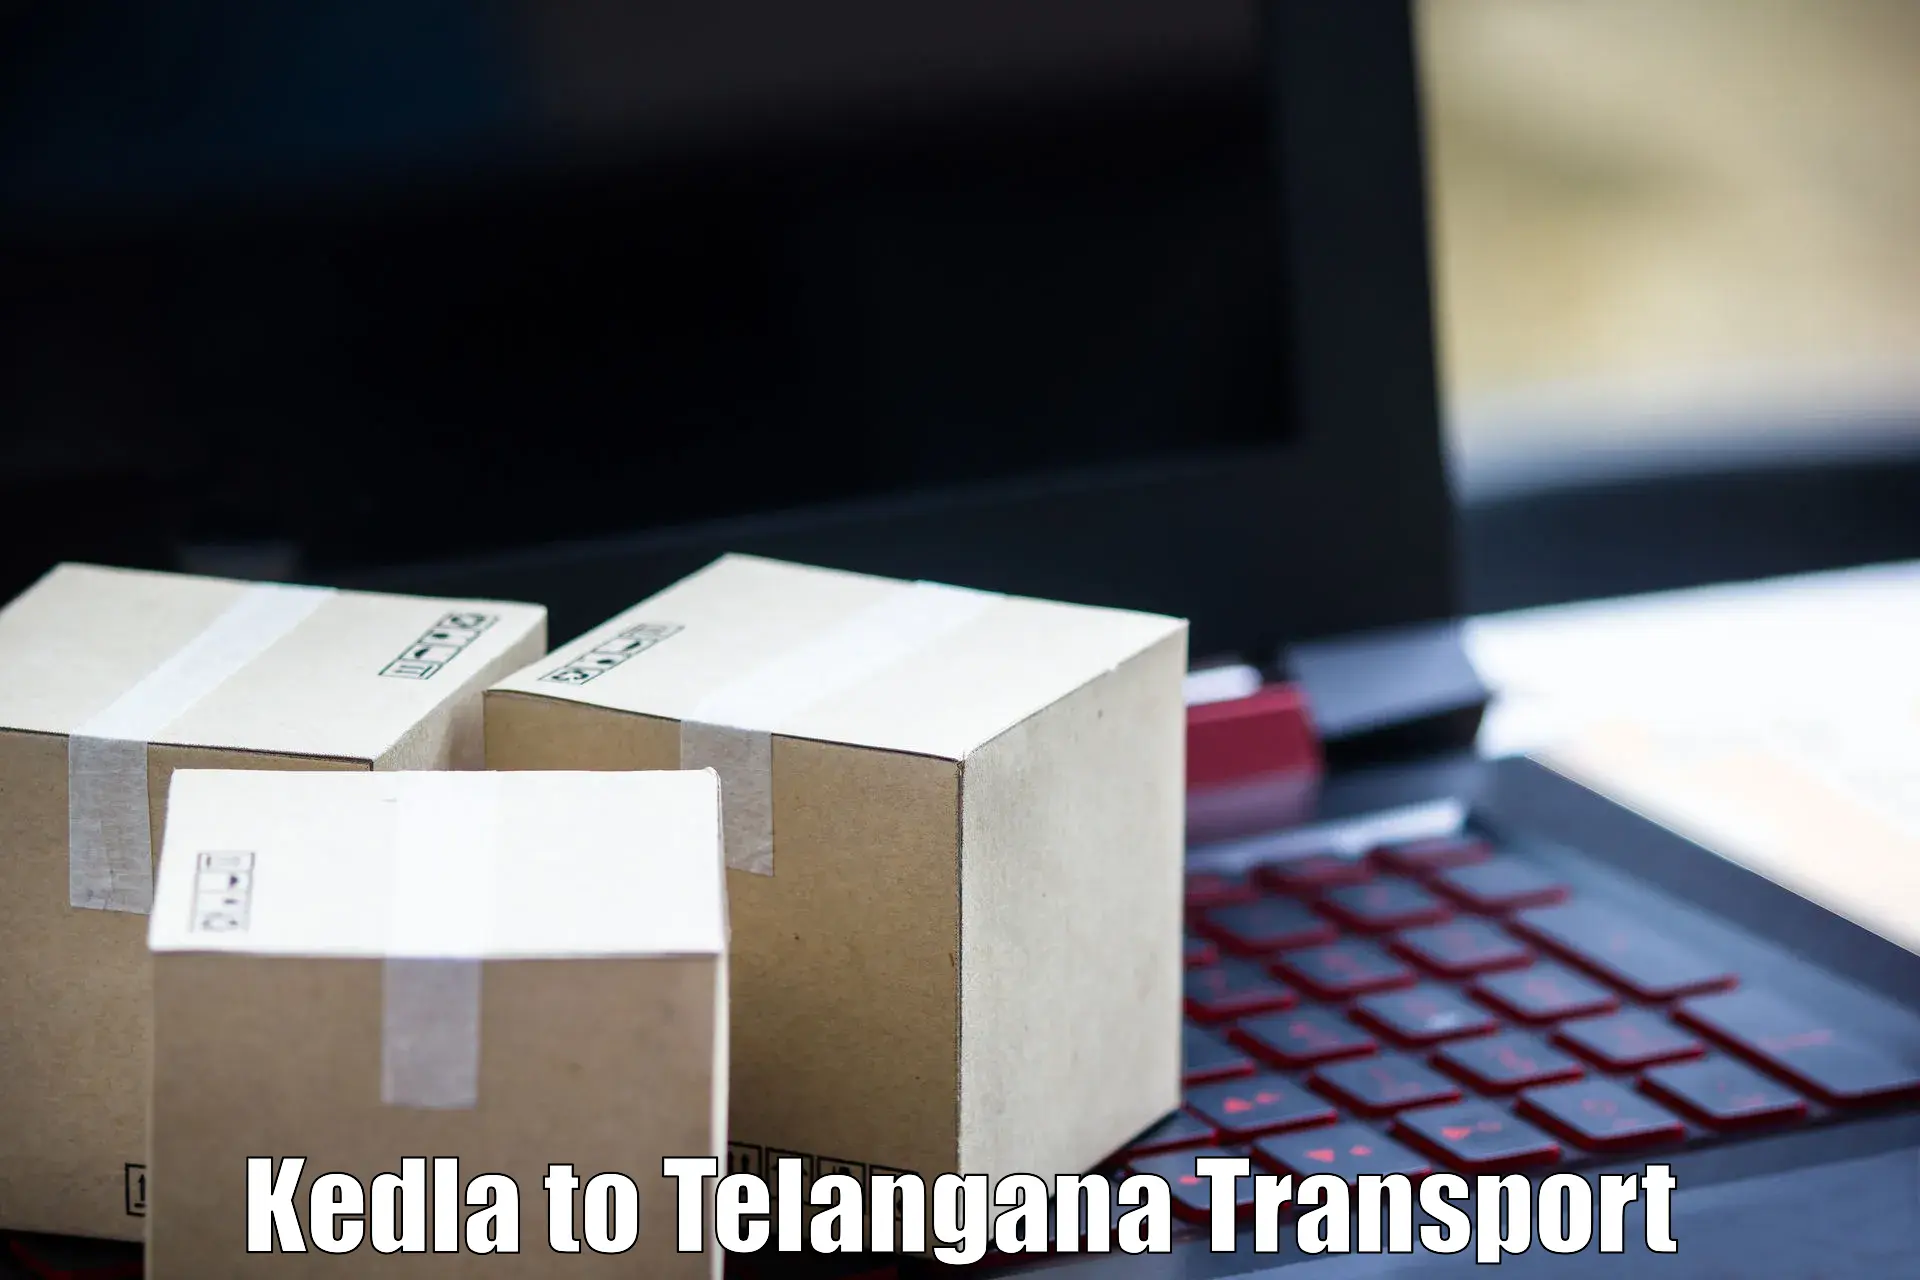 Daily transport service Kedla to Karimnagar